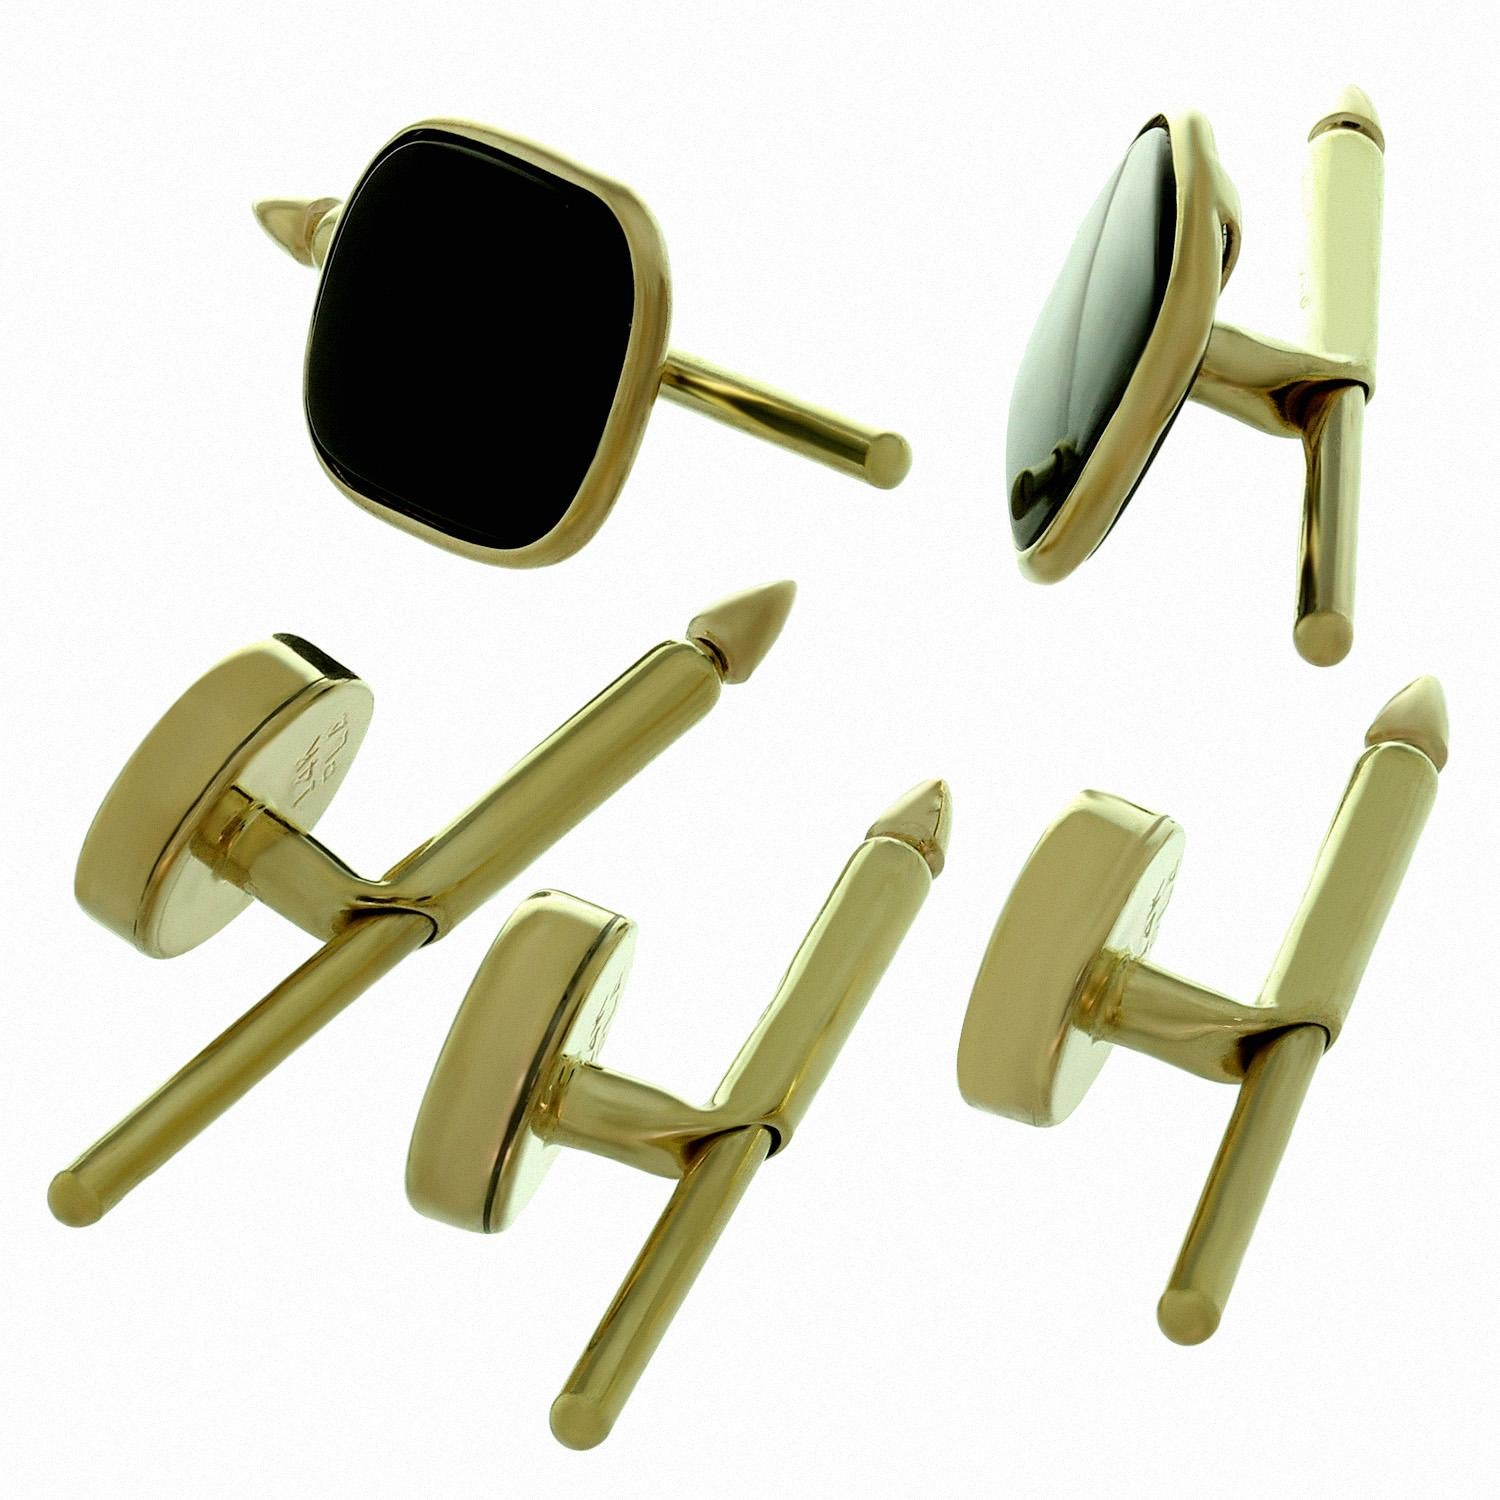 Cet ensemble de 5 boutons pour homme, datant des années 1970, présente des formes rectangulaires et ovales classiques en or jaune 14 carats et serties d'onyx noir. Mesures : 0.11 mm (43 po) x 26 mm (1,02 po), 8 mm (0,31 po) x 28 mm (1,10 po).